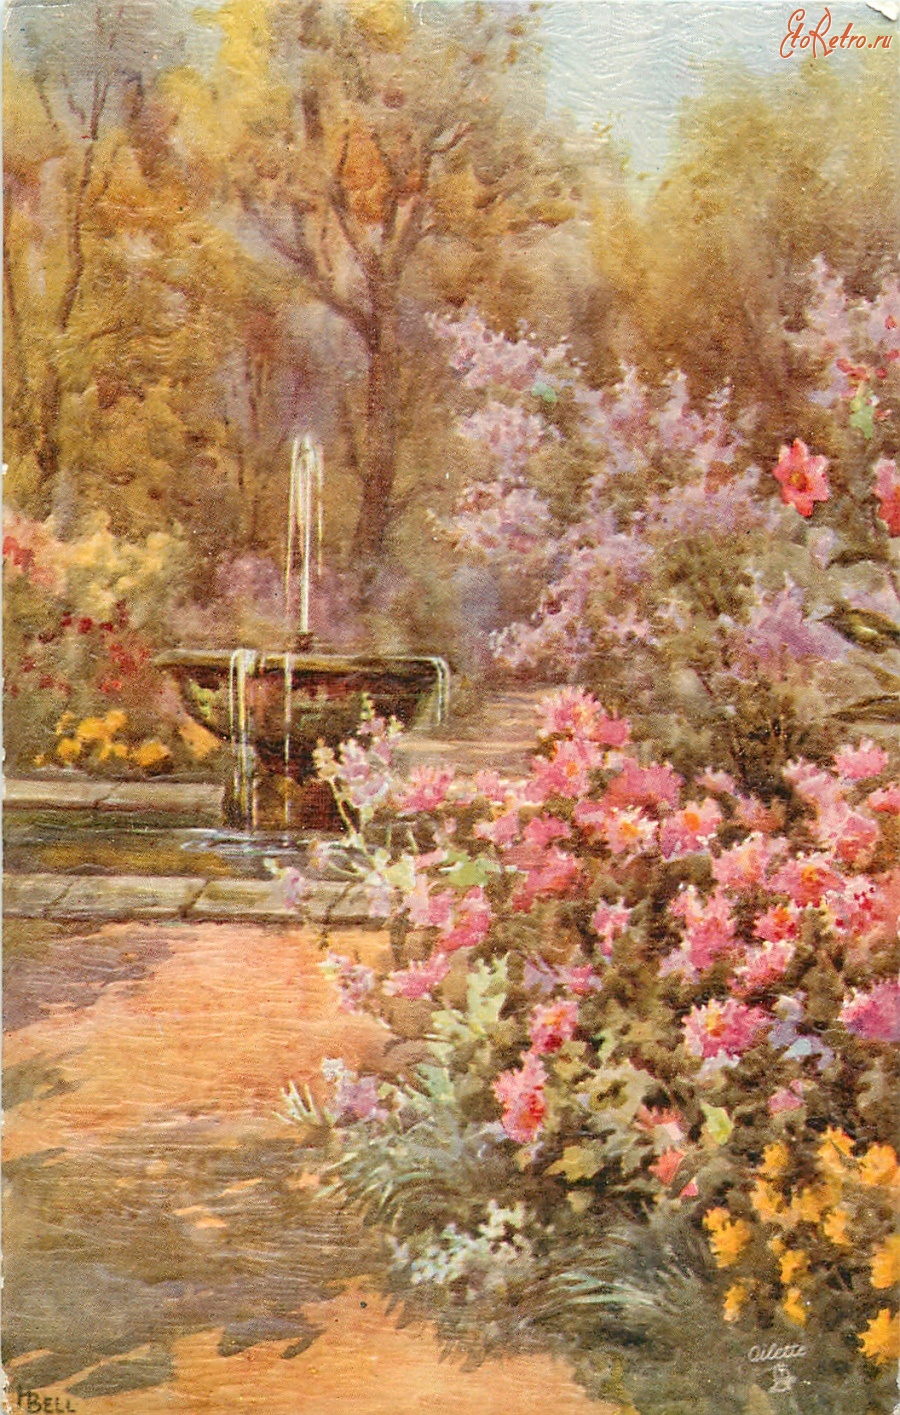 Ретро открытки - Фонтан в саду и розовые цветы